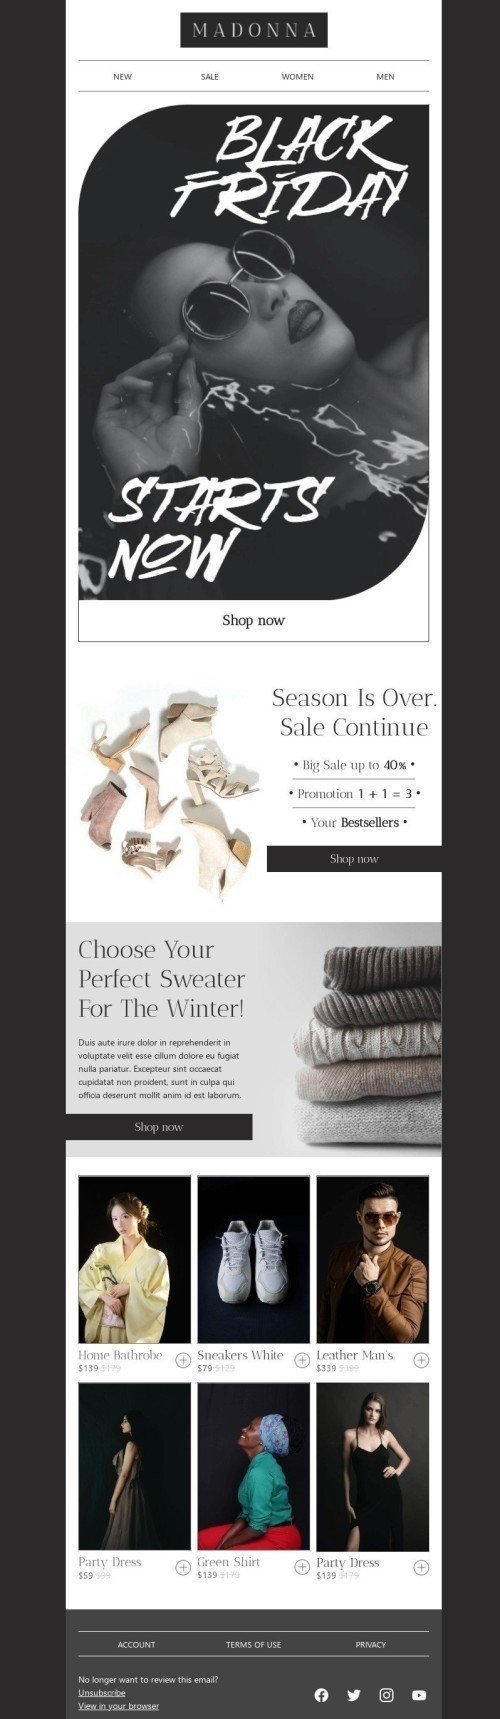 Шаблон письма к празднику Черная пятница «Выбери свой идеальный свитер» для индустрии «Мода» дектопный вид